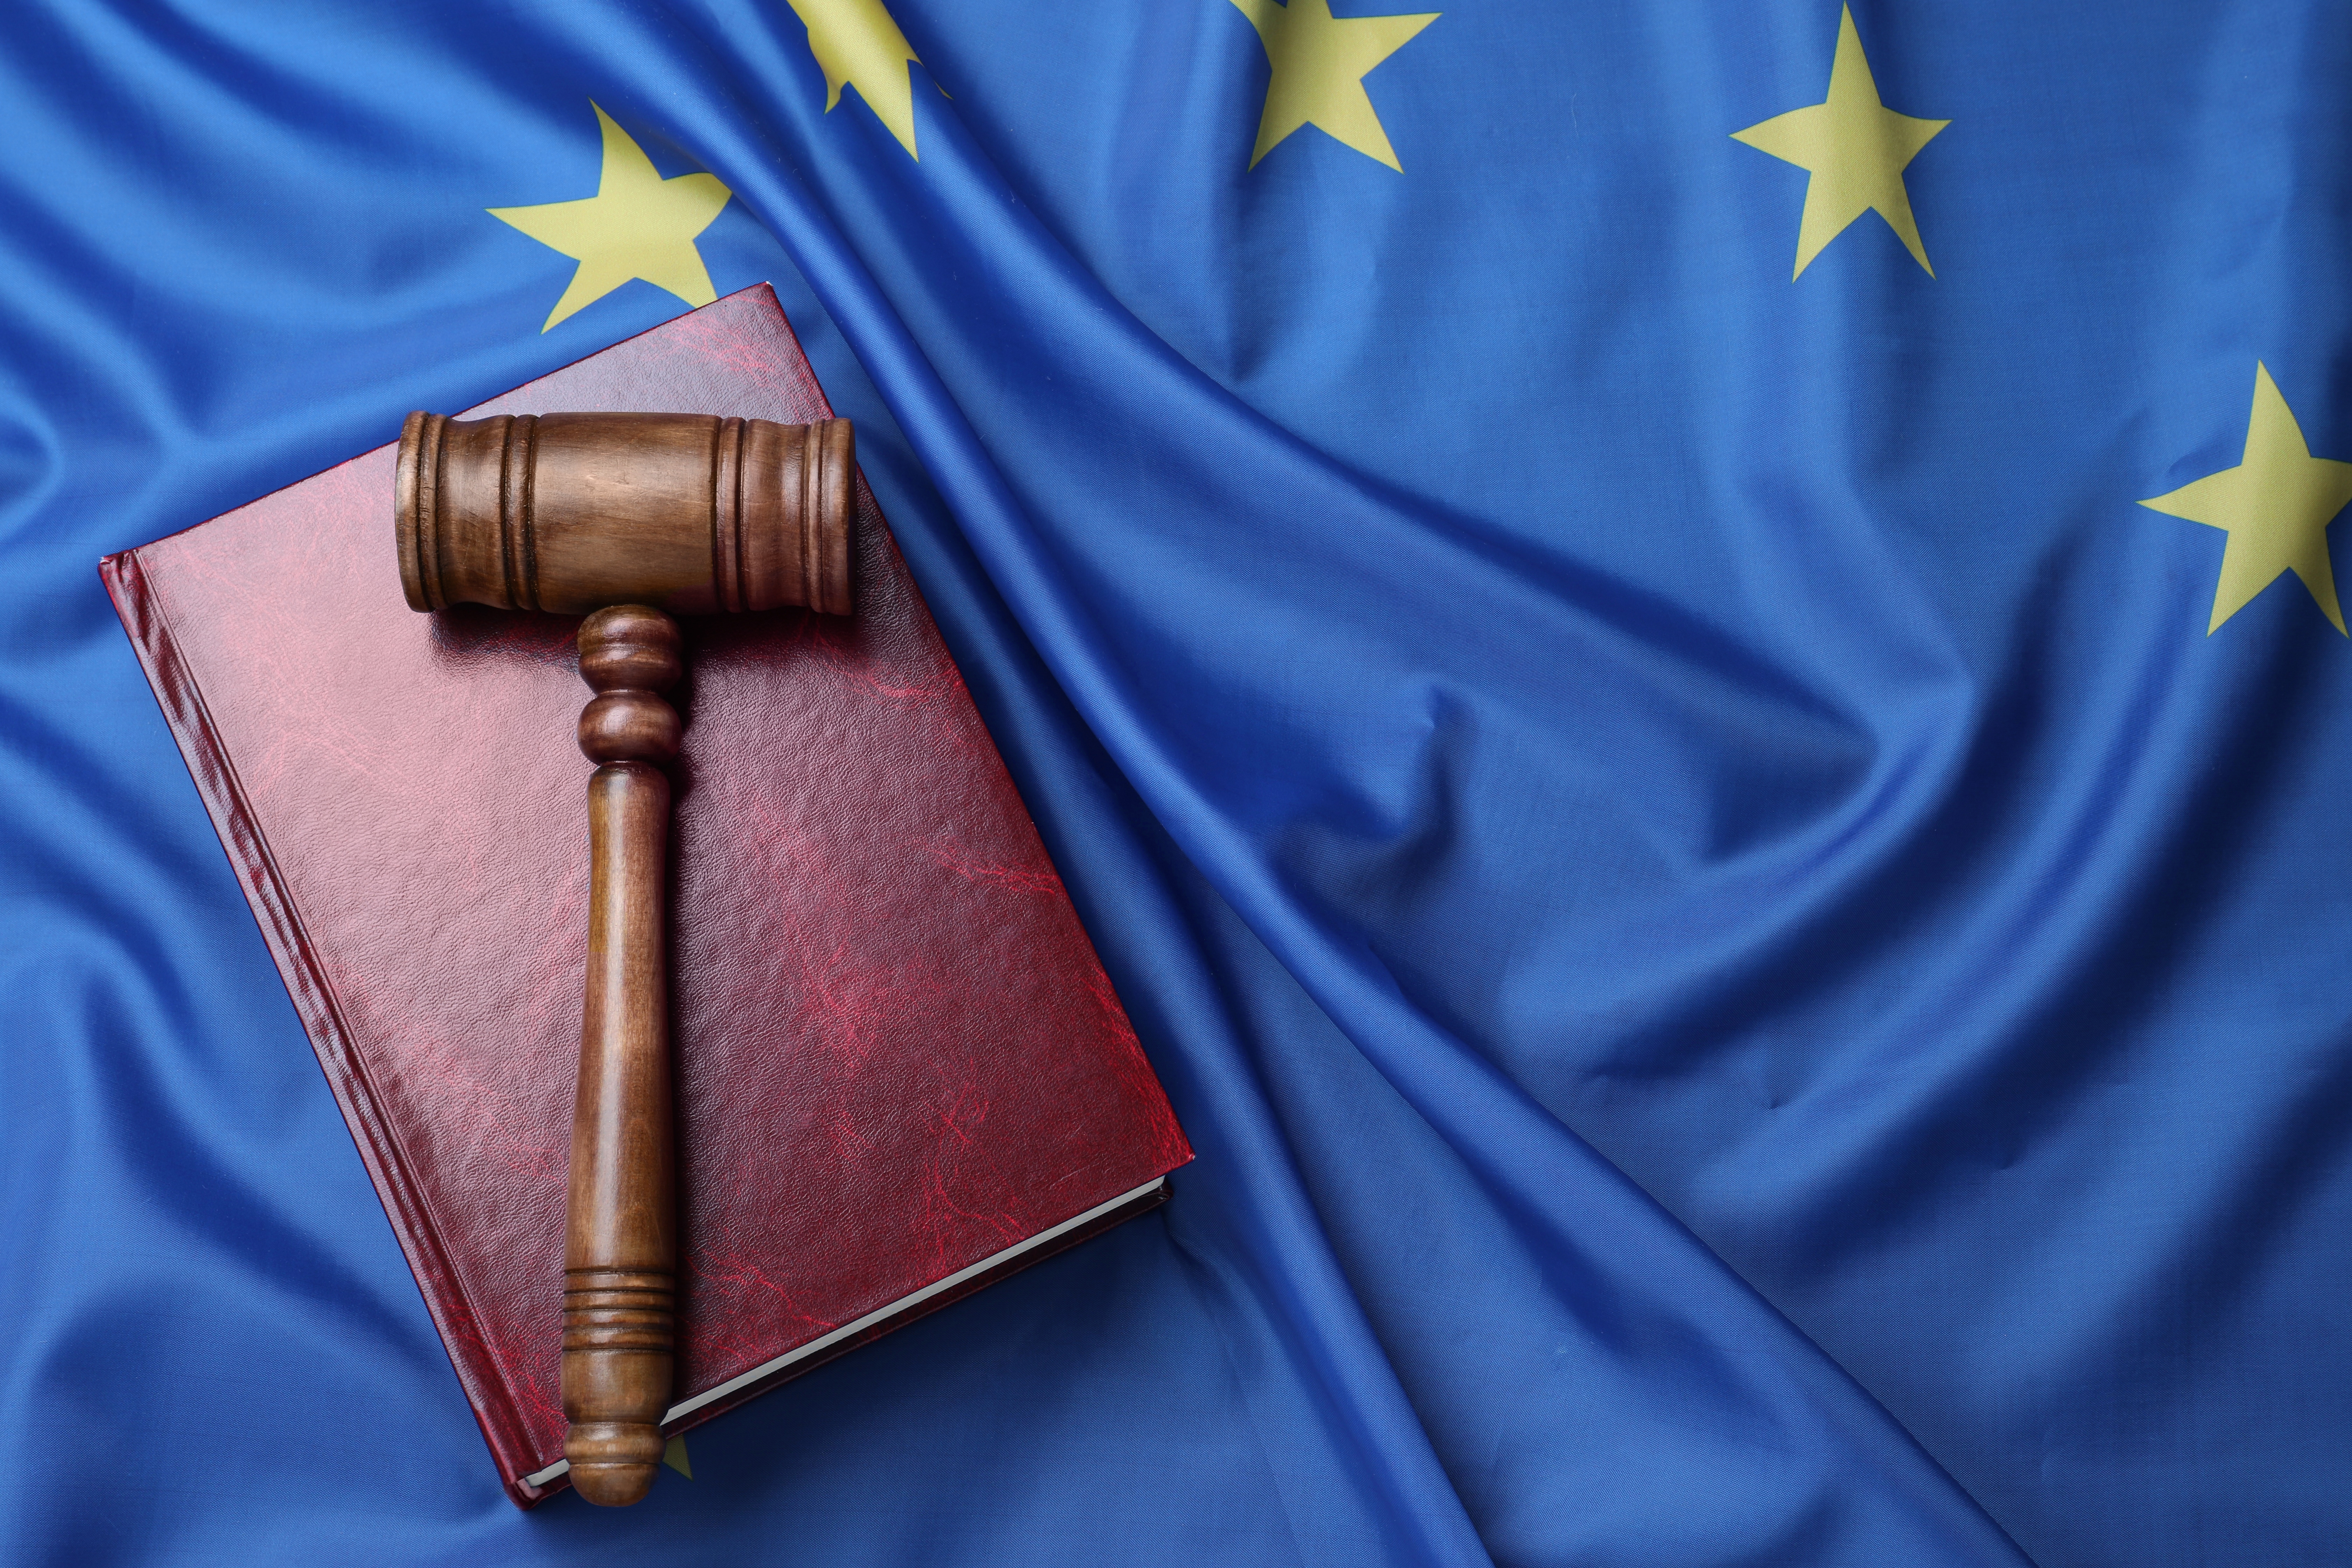 Символика правосудия в Европе, законность паспорта и гражданства ЕС